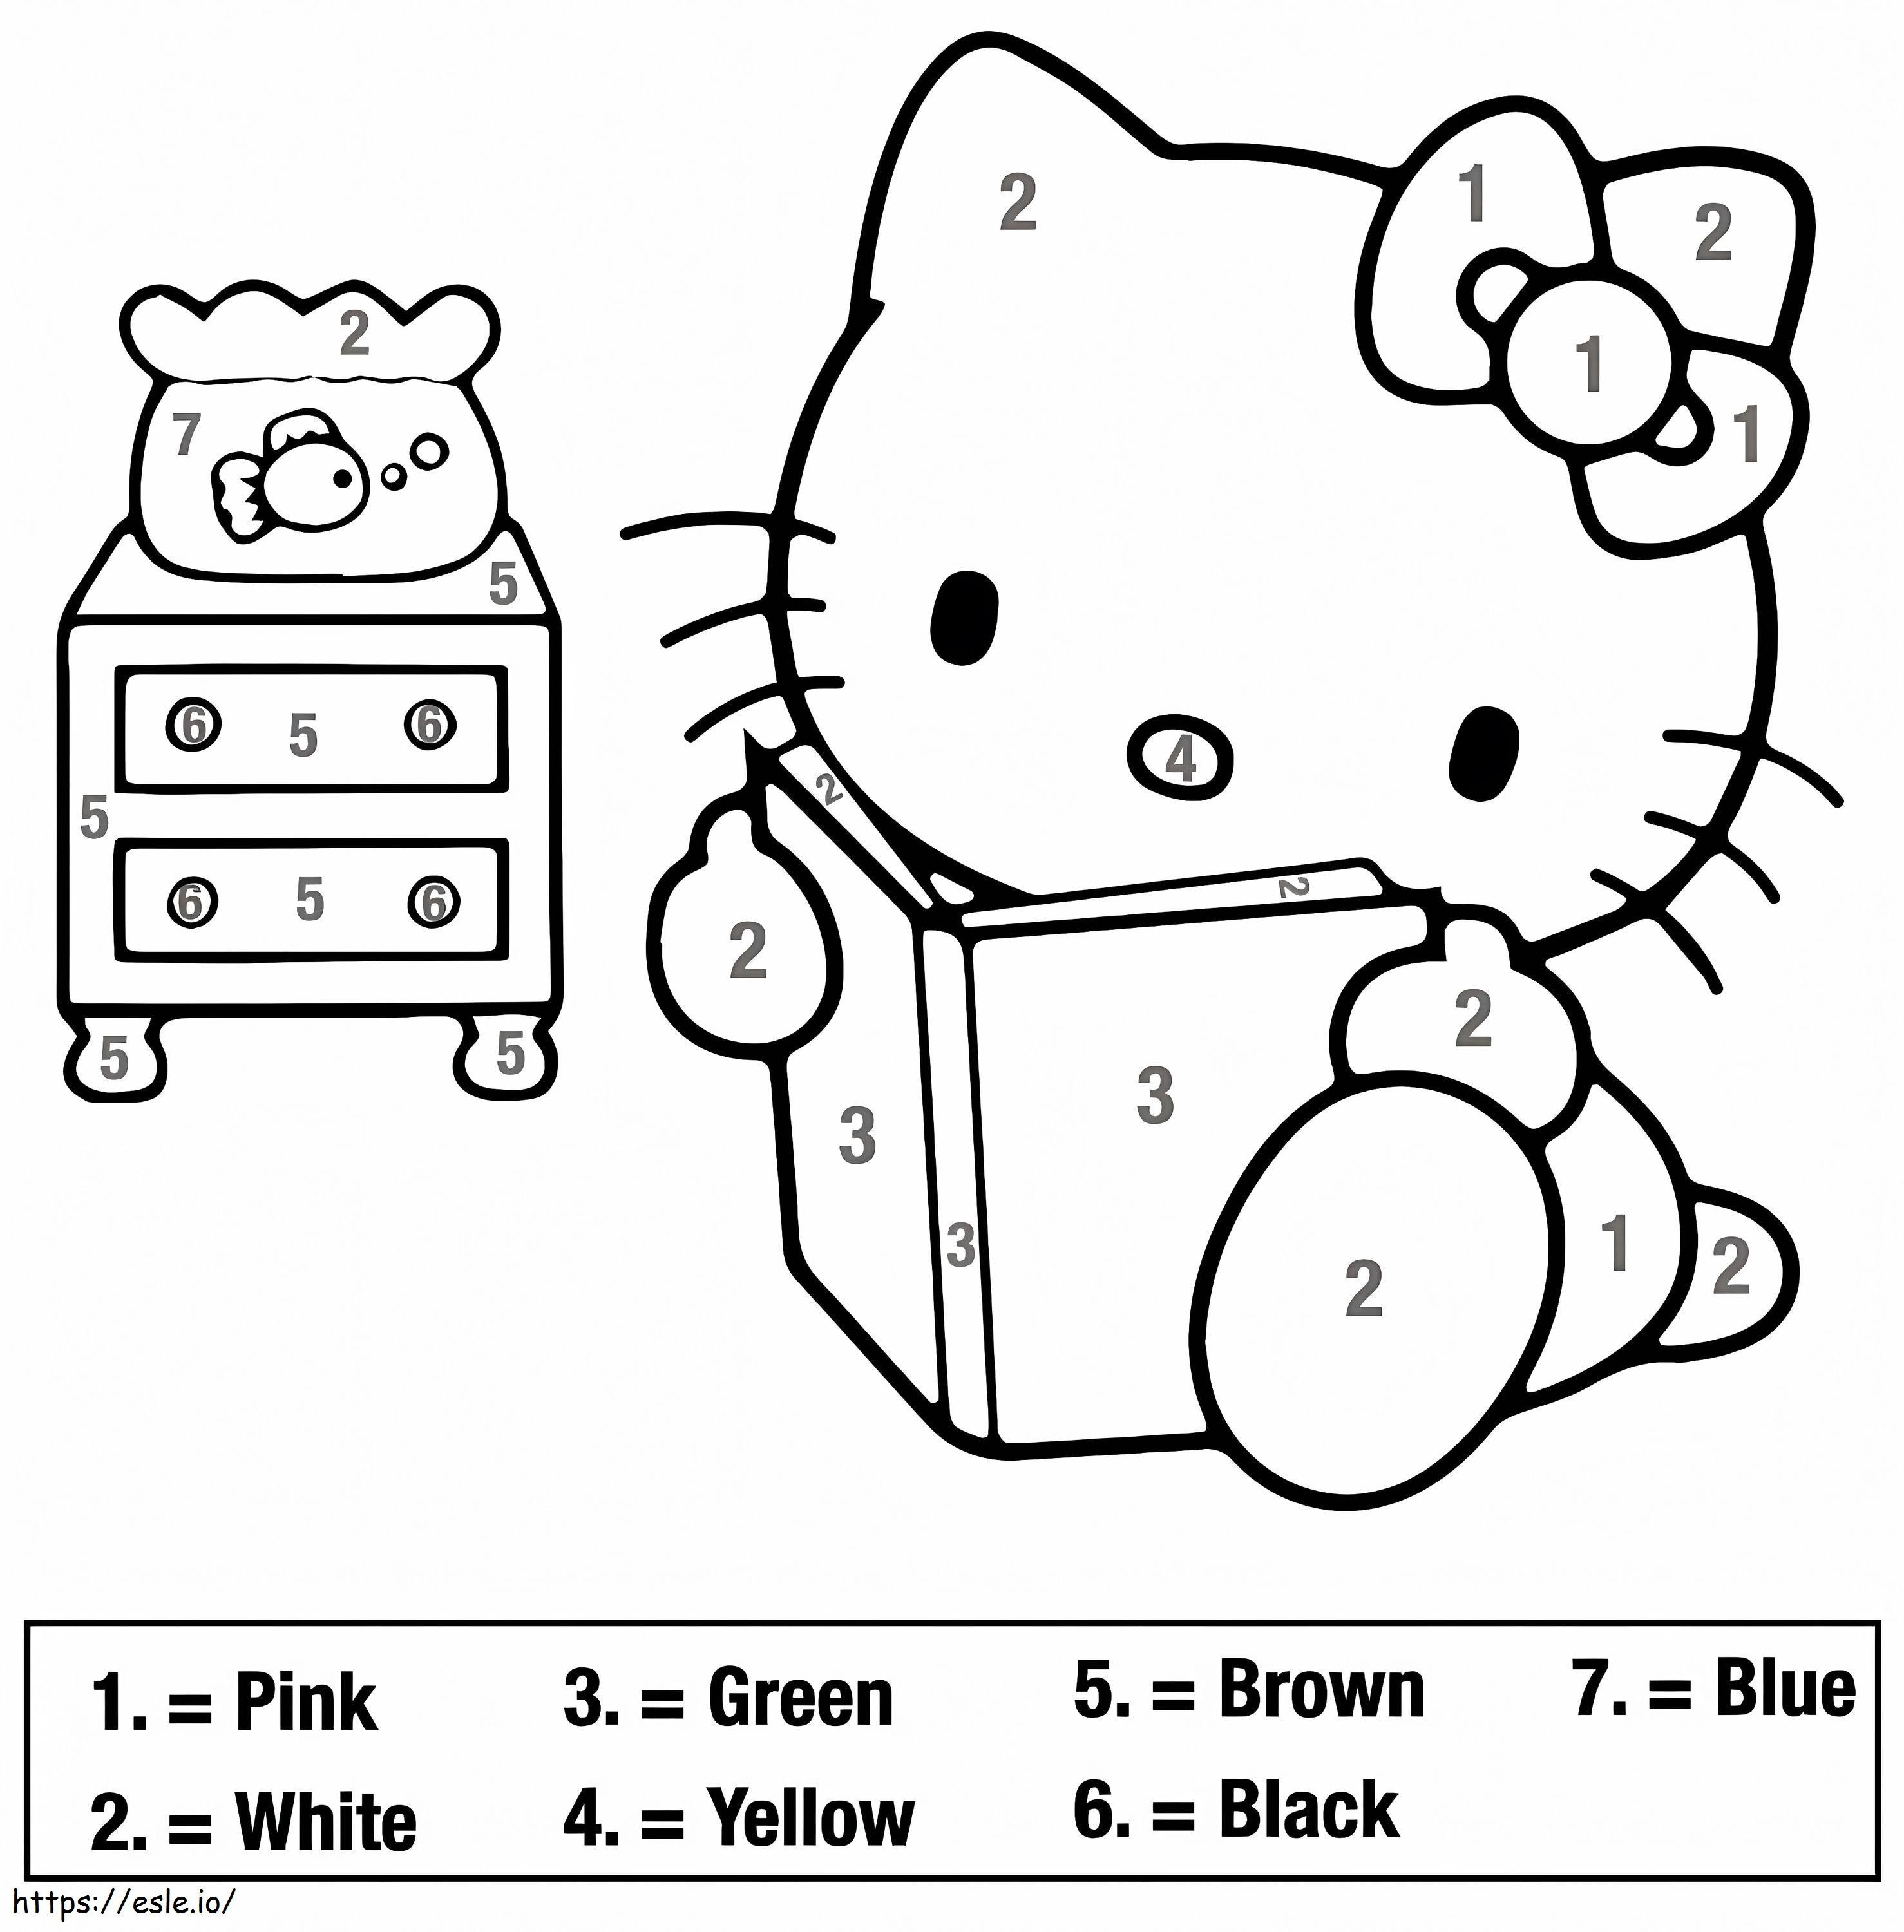 Gratuit Hello Kitty Colorează după număr de colorat